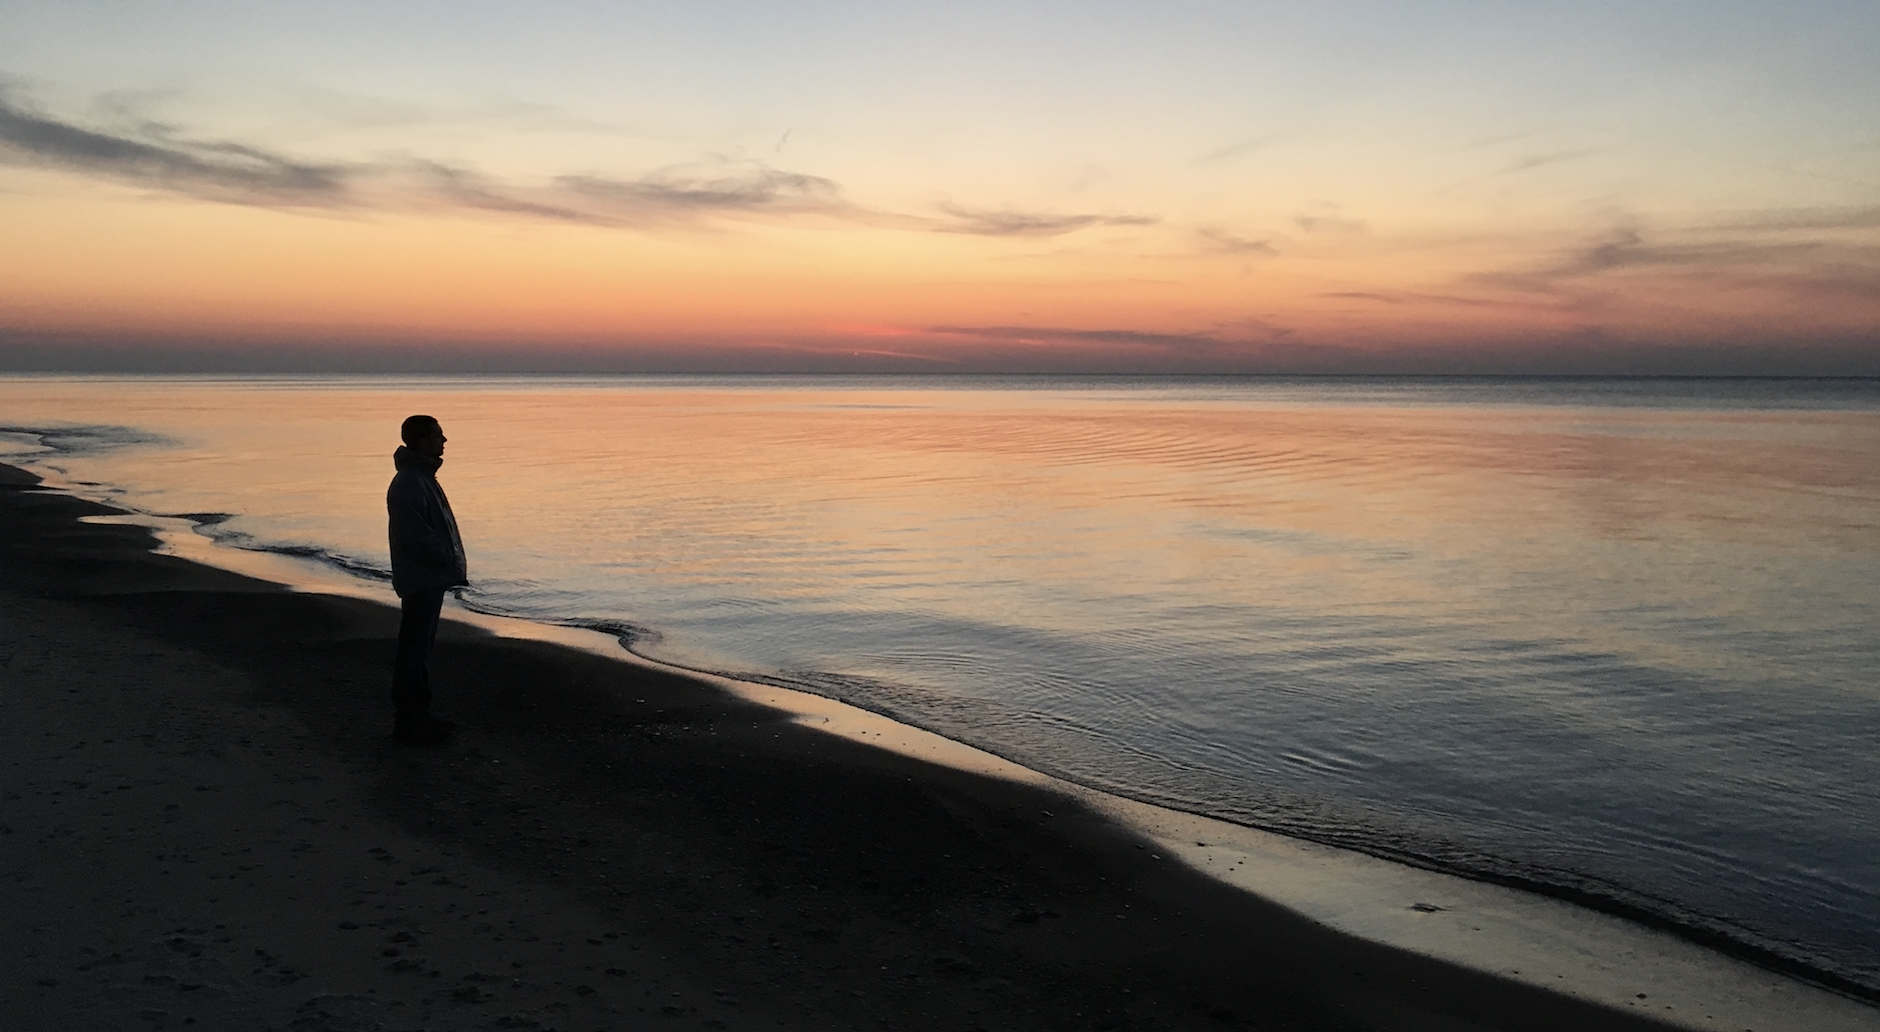 Lake Michigan at sunset